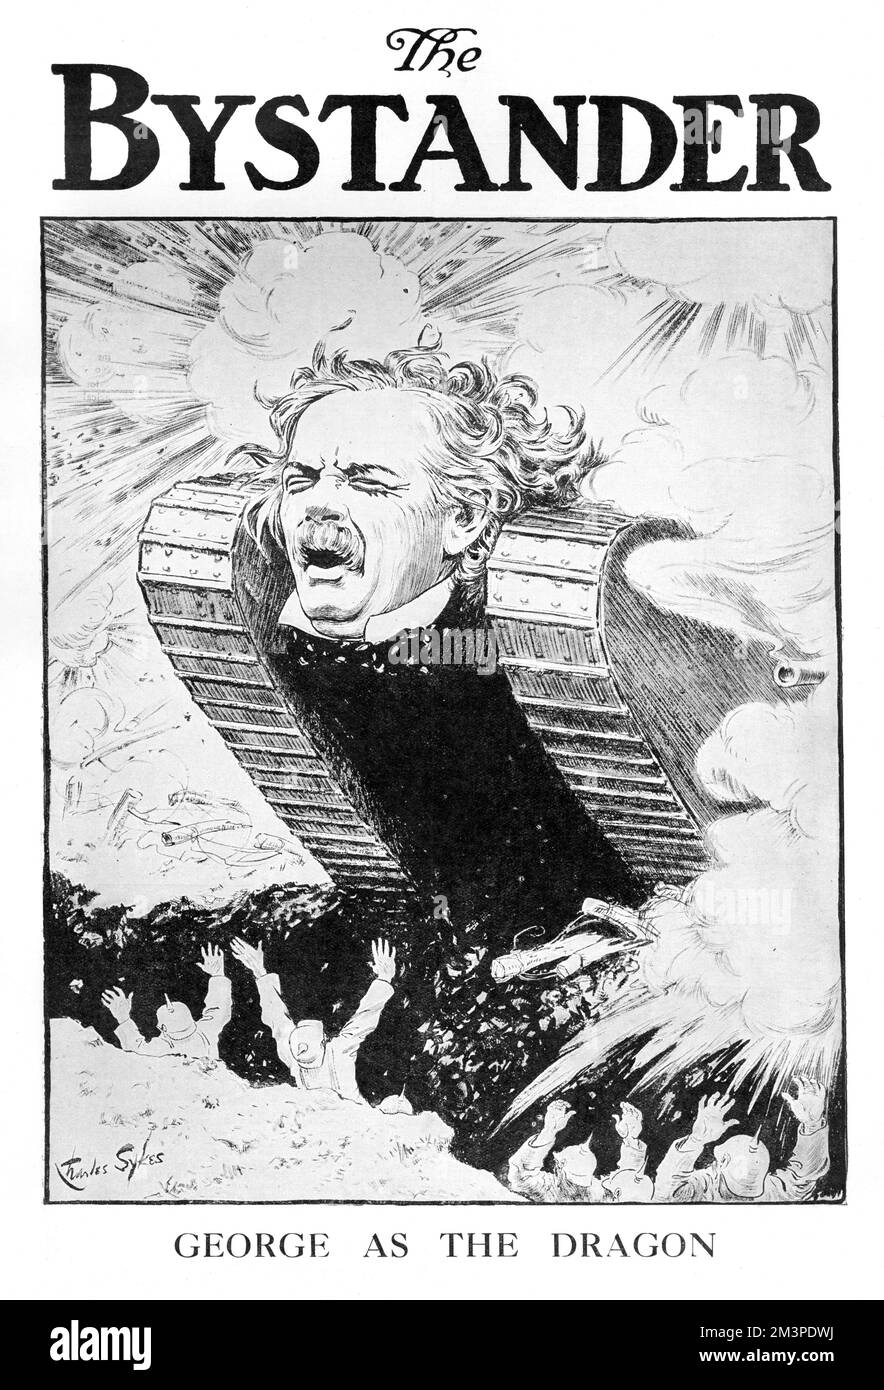 Le visage de David Lloyd George orne l'avant d'un char alors qu'il prend le rôle de Premier ministre britannique pendant la première Guerre mondiale Date: 1916 Banque D'Images